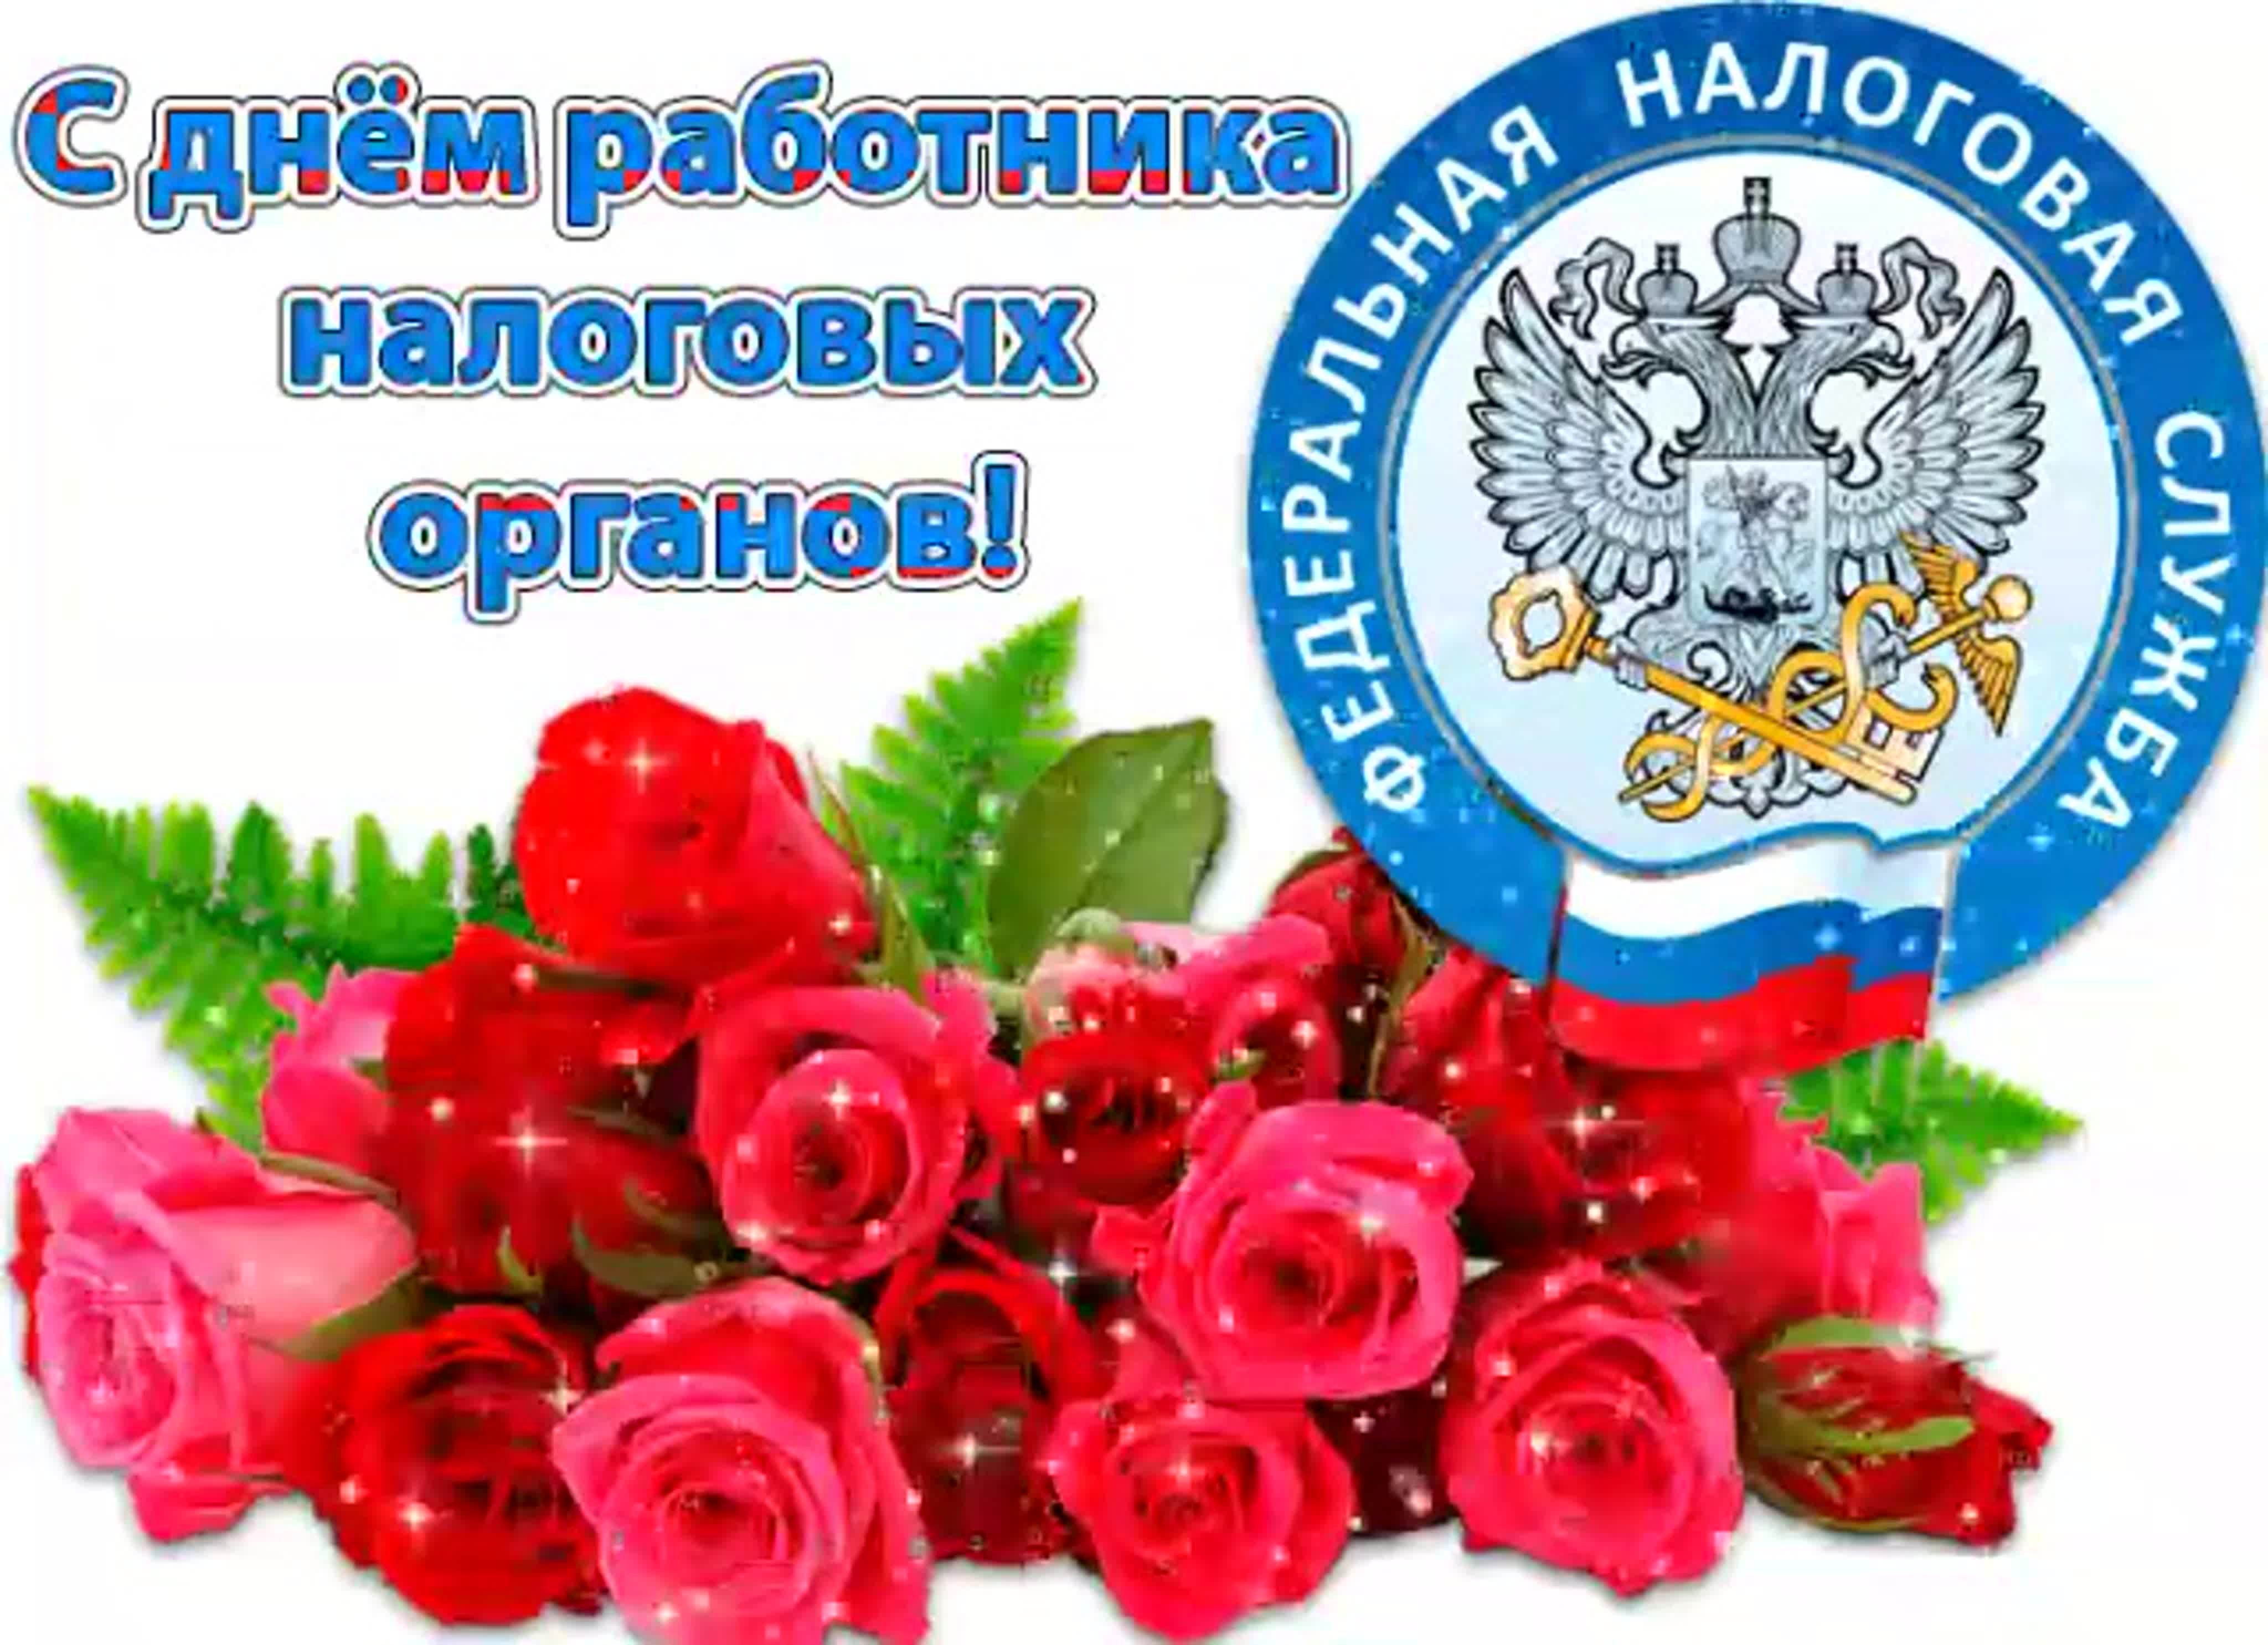 21 ноября День работника налоговых органов РФ. Открытки поздравления гиф фото скачать